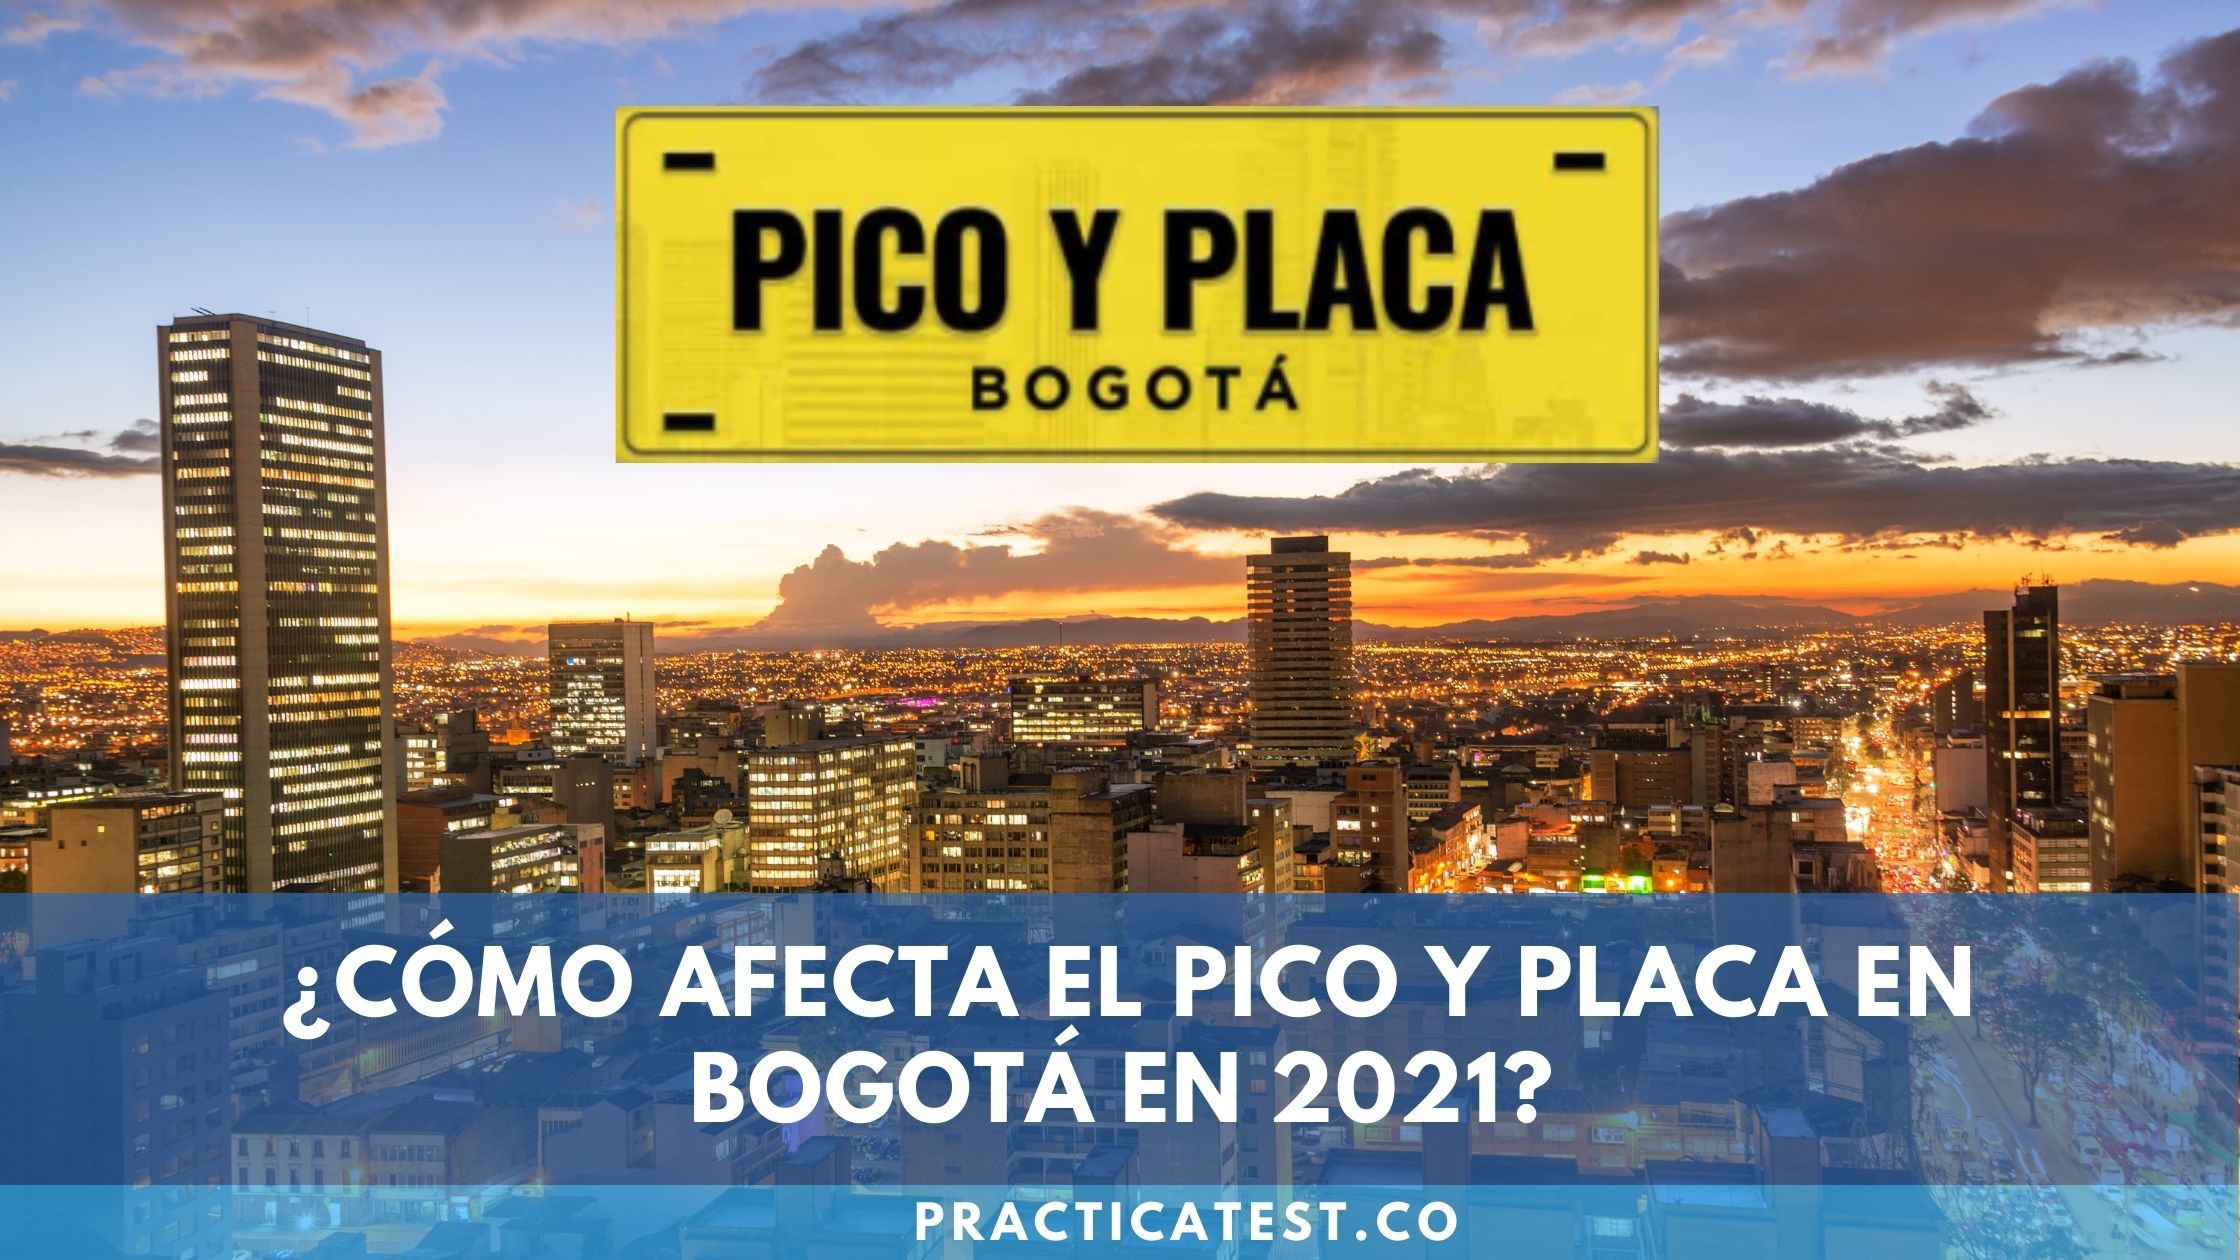 Restricciones y excepciones del Pico y Placa en Bogotá en 2021